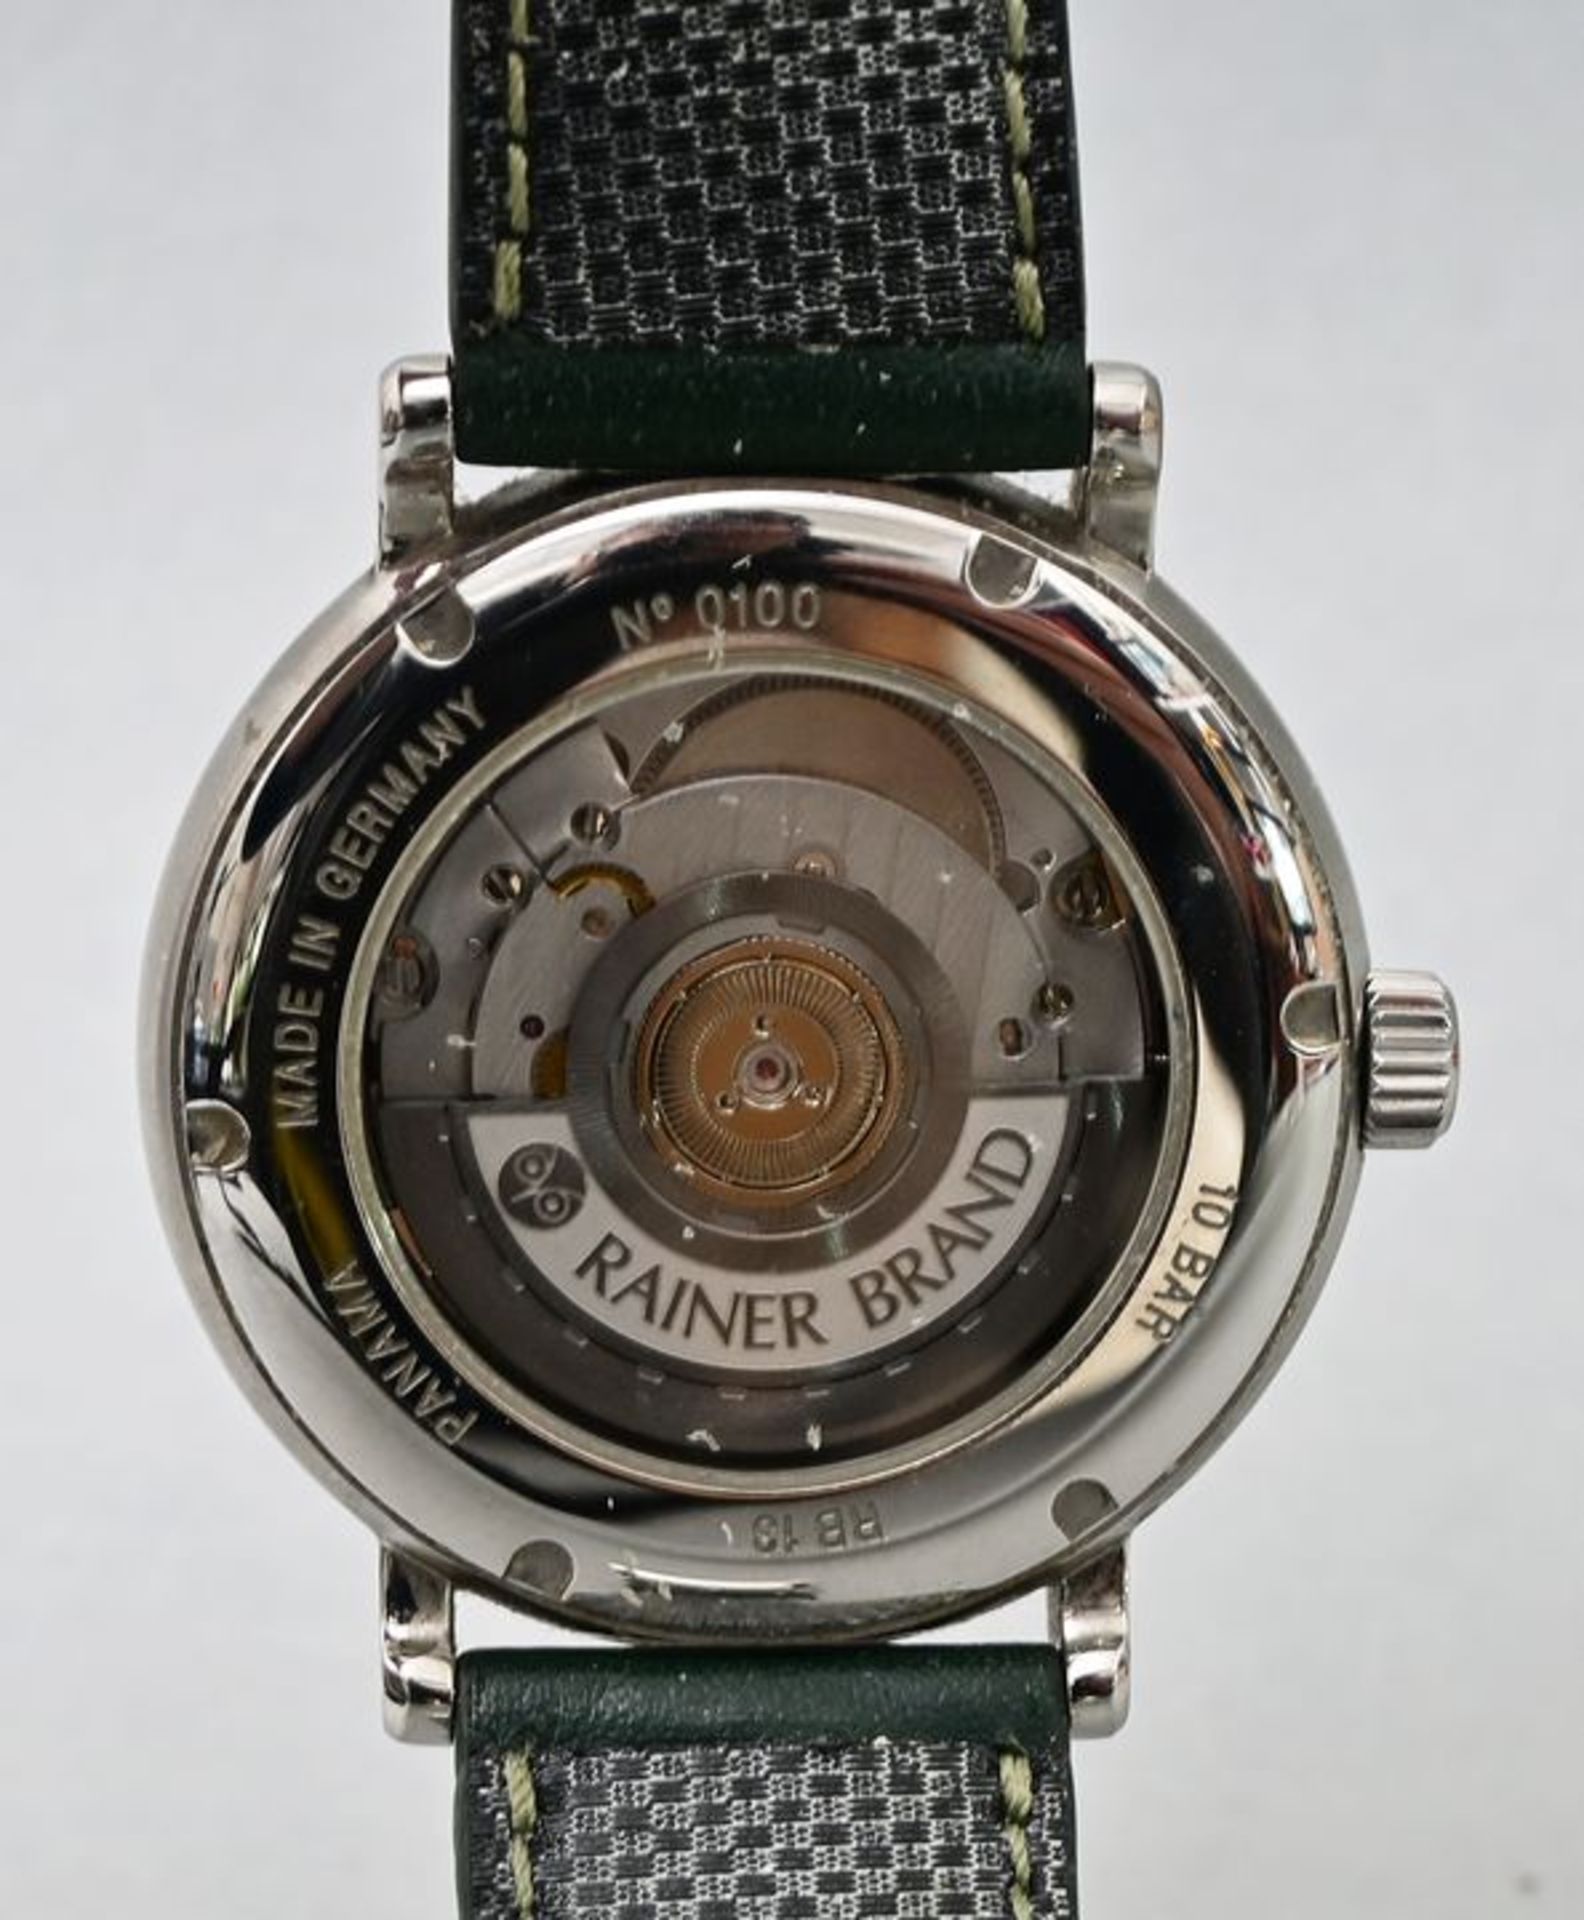 Armbanduhr Rainer Brand/ a man's wristwatch - Bild 4 aus 6